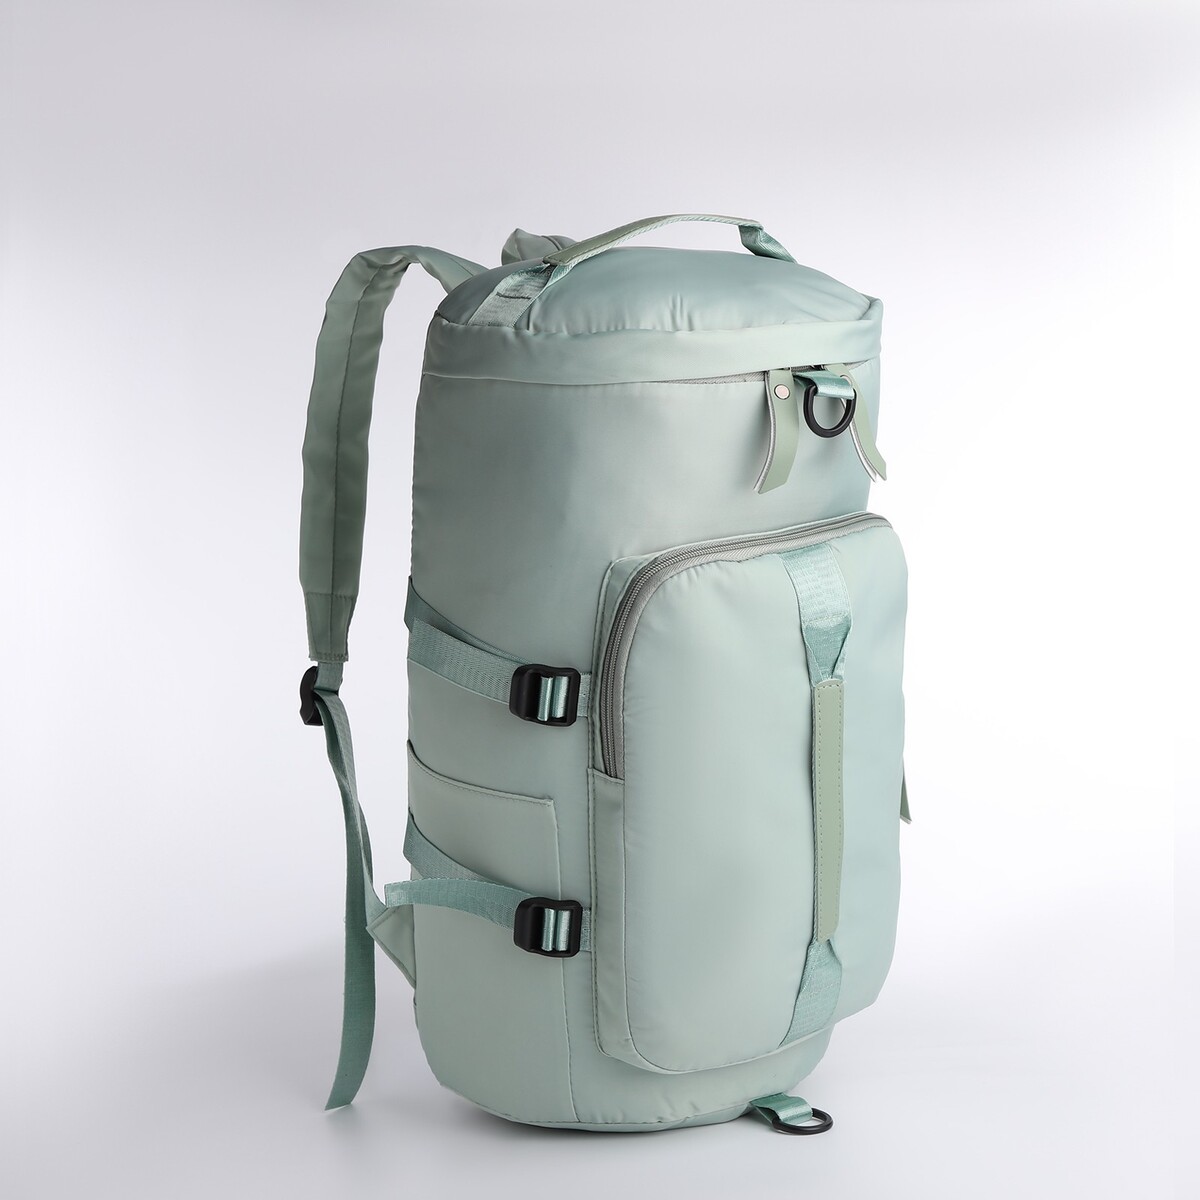 Рюкзак-сумка на молнии, 4 наружных кармана, отделение для обуви, цвет зеленый рюкзак deuter cross air 20 exp отделение для влажной одежды 47х34х20 18 4 л зеленый 32094 2704